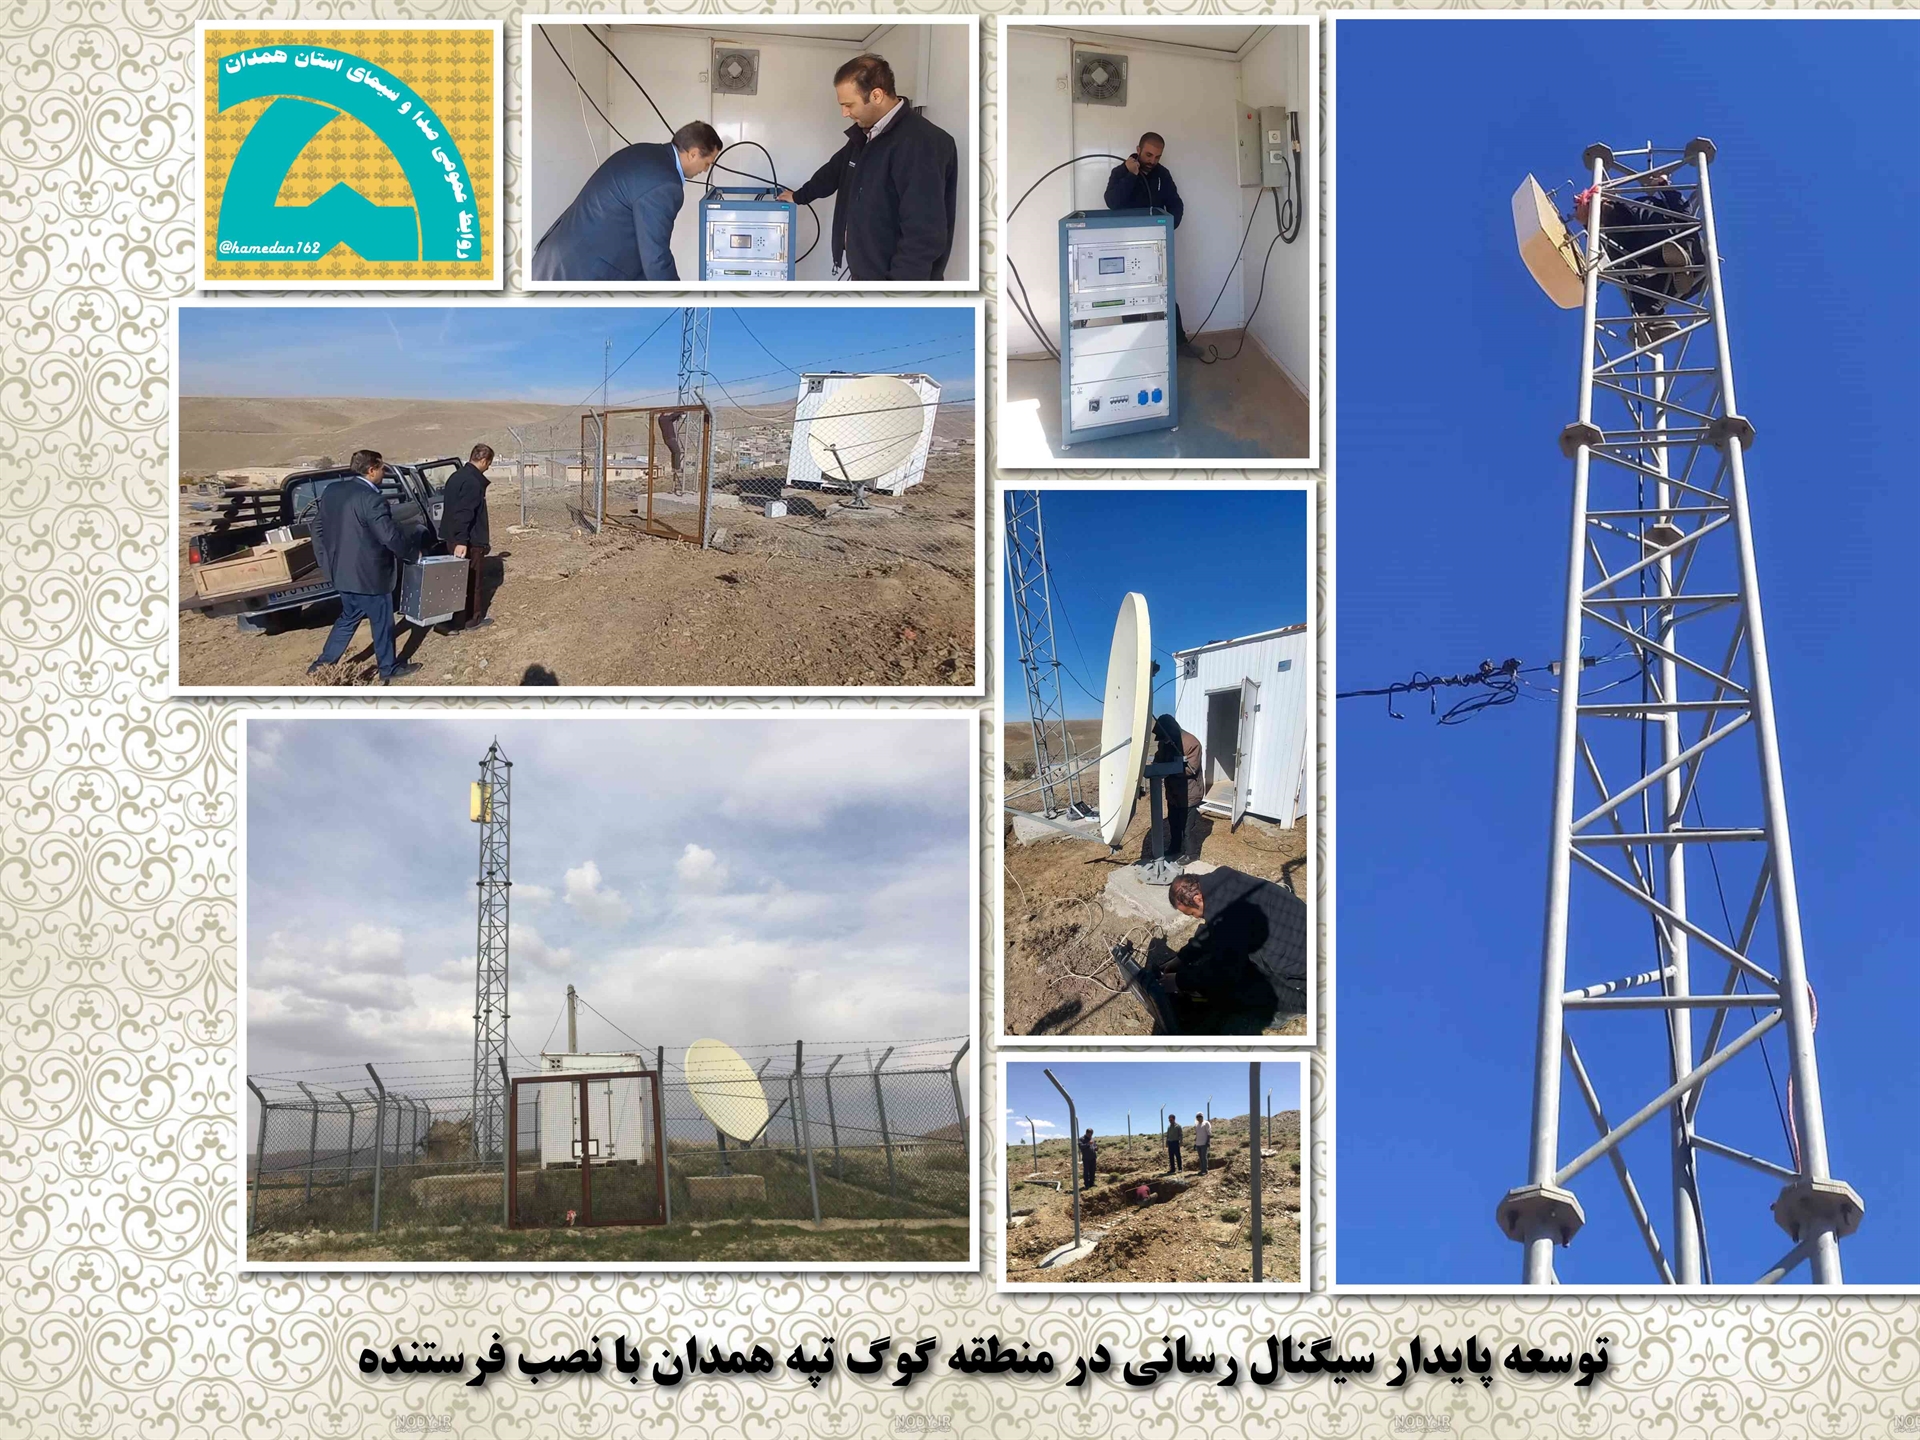 توسعه پایدار سیگنال رسانی در منطقه گوگ تپه همدان با نصب فرستنده